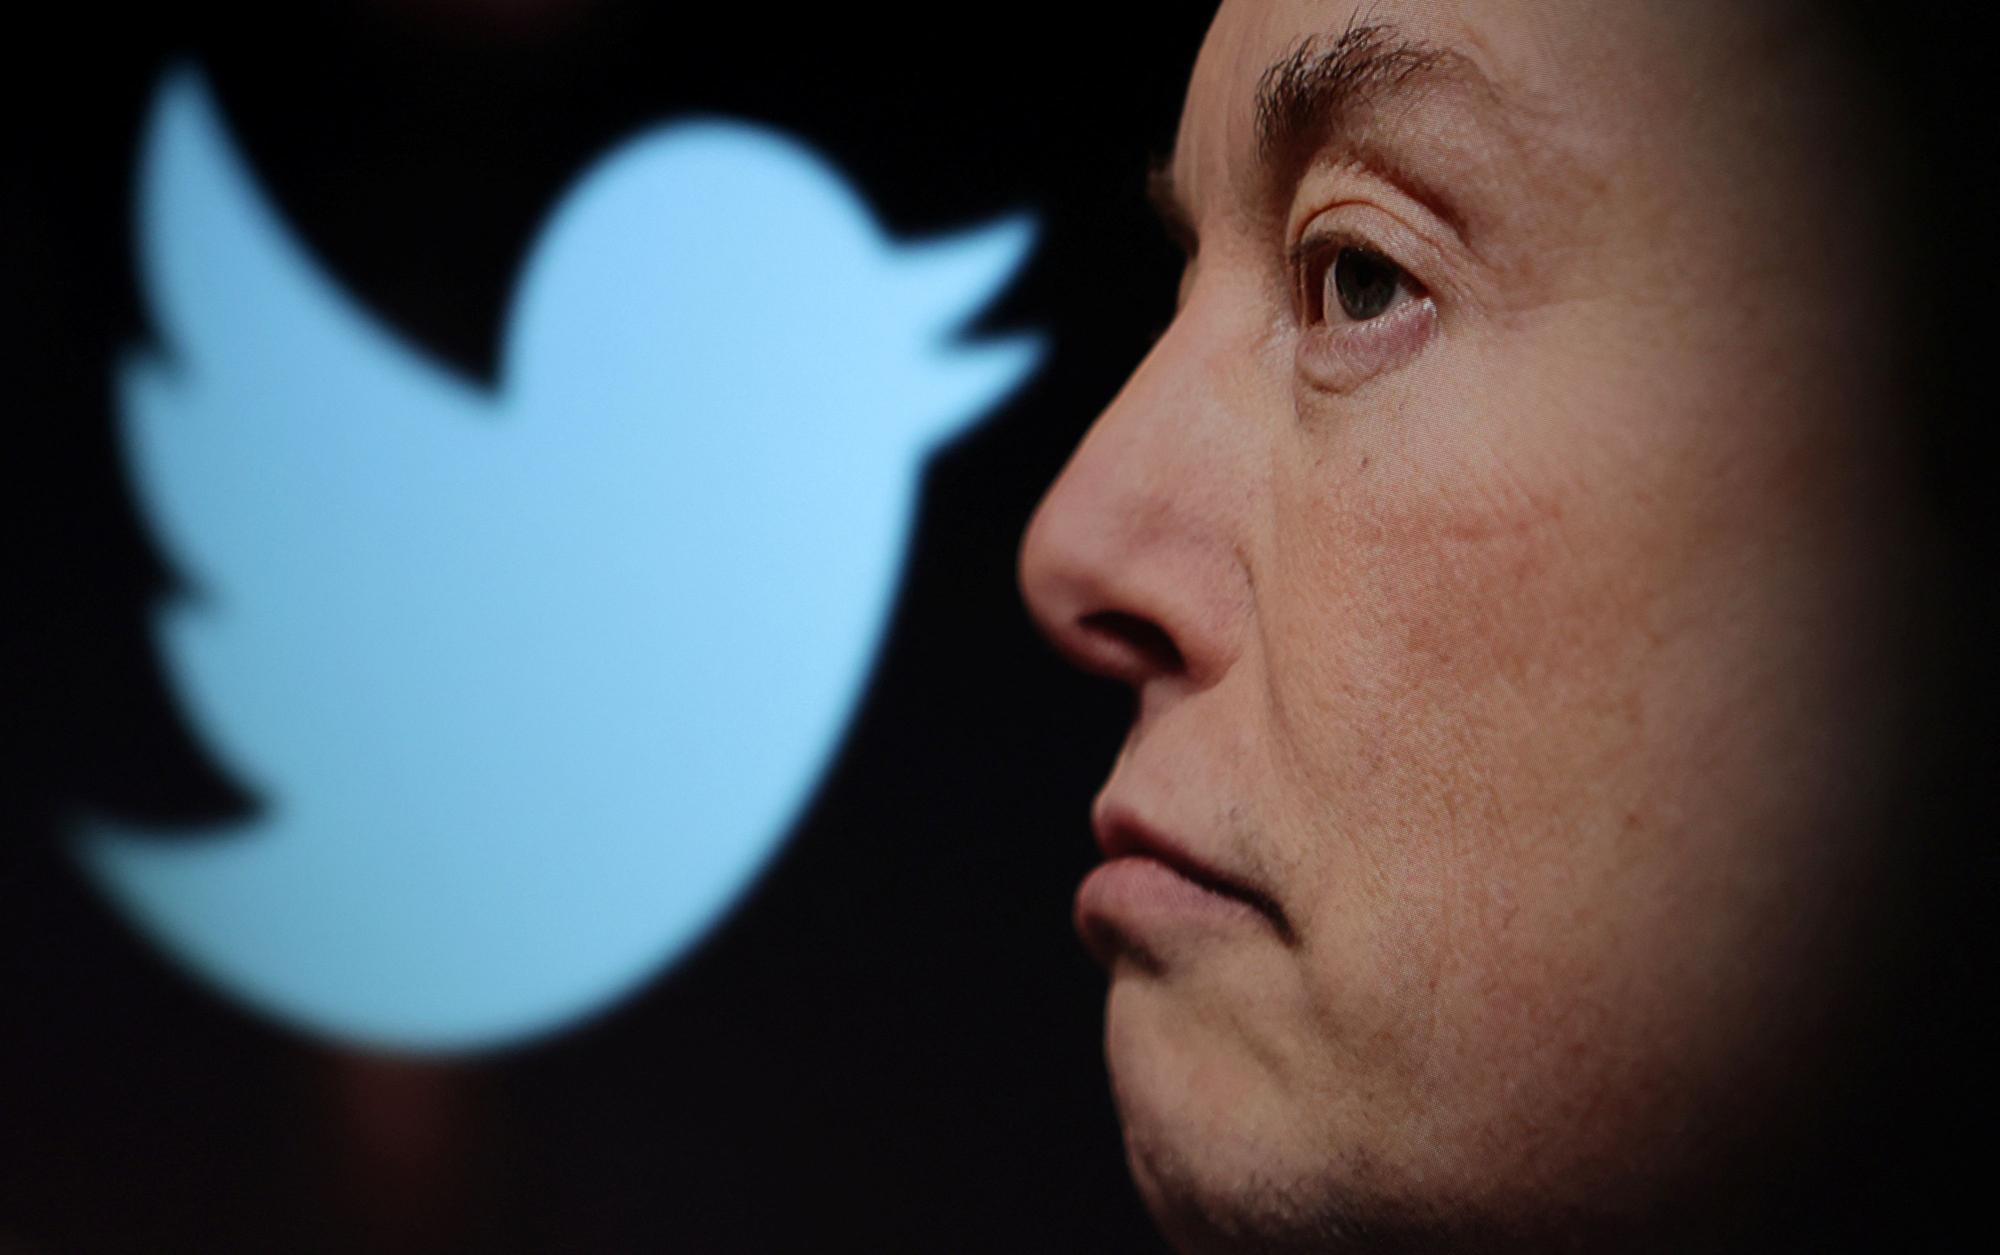 El dueño de Twitter, Elon Musk, junto al logo de la red social que acaba de comprar.